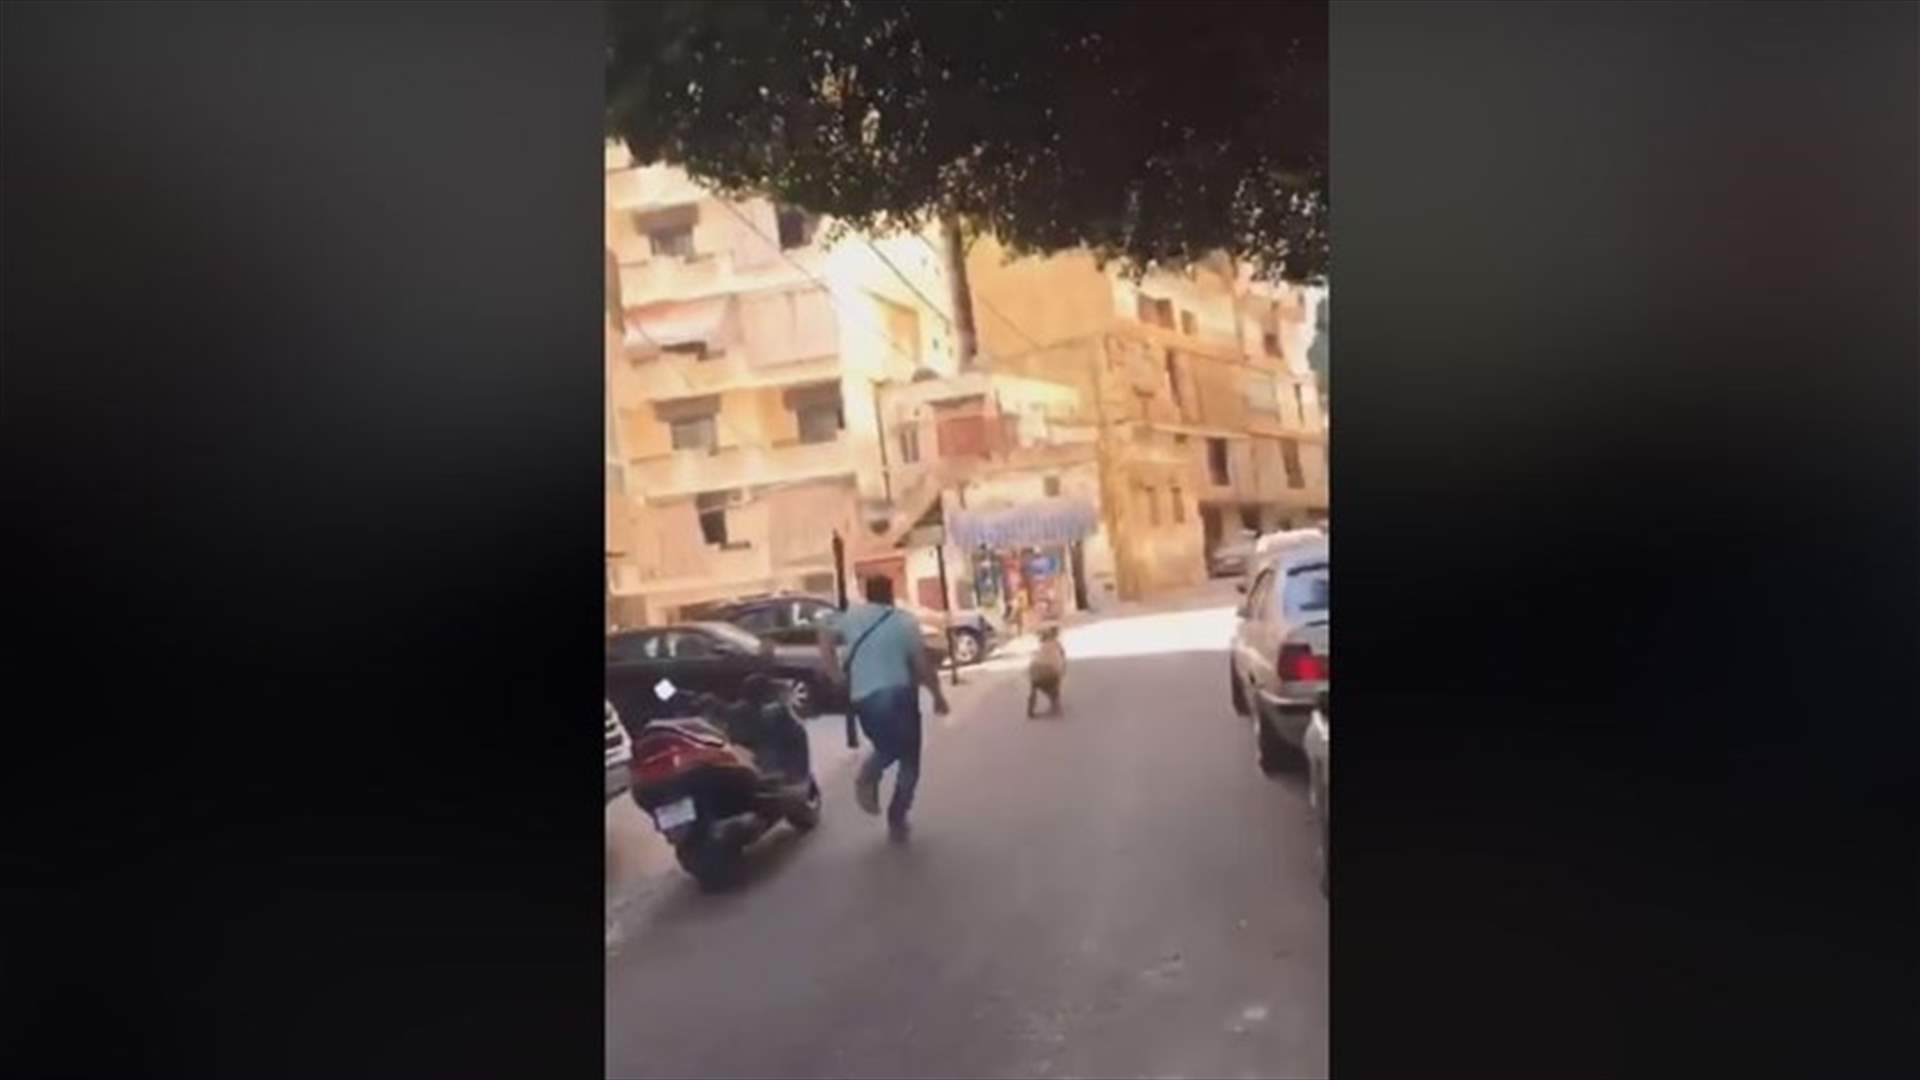 فيديو طريف من بيروت... احتفلوا بعودة أحد الحجاج بالمفرقعات النارية فهرب الخروف